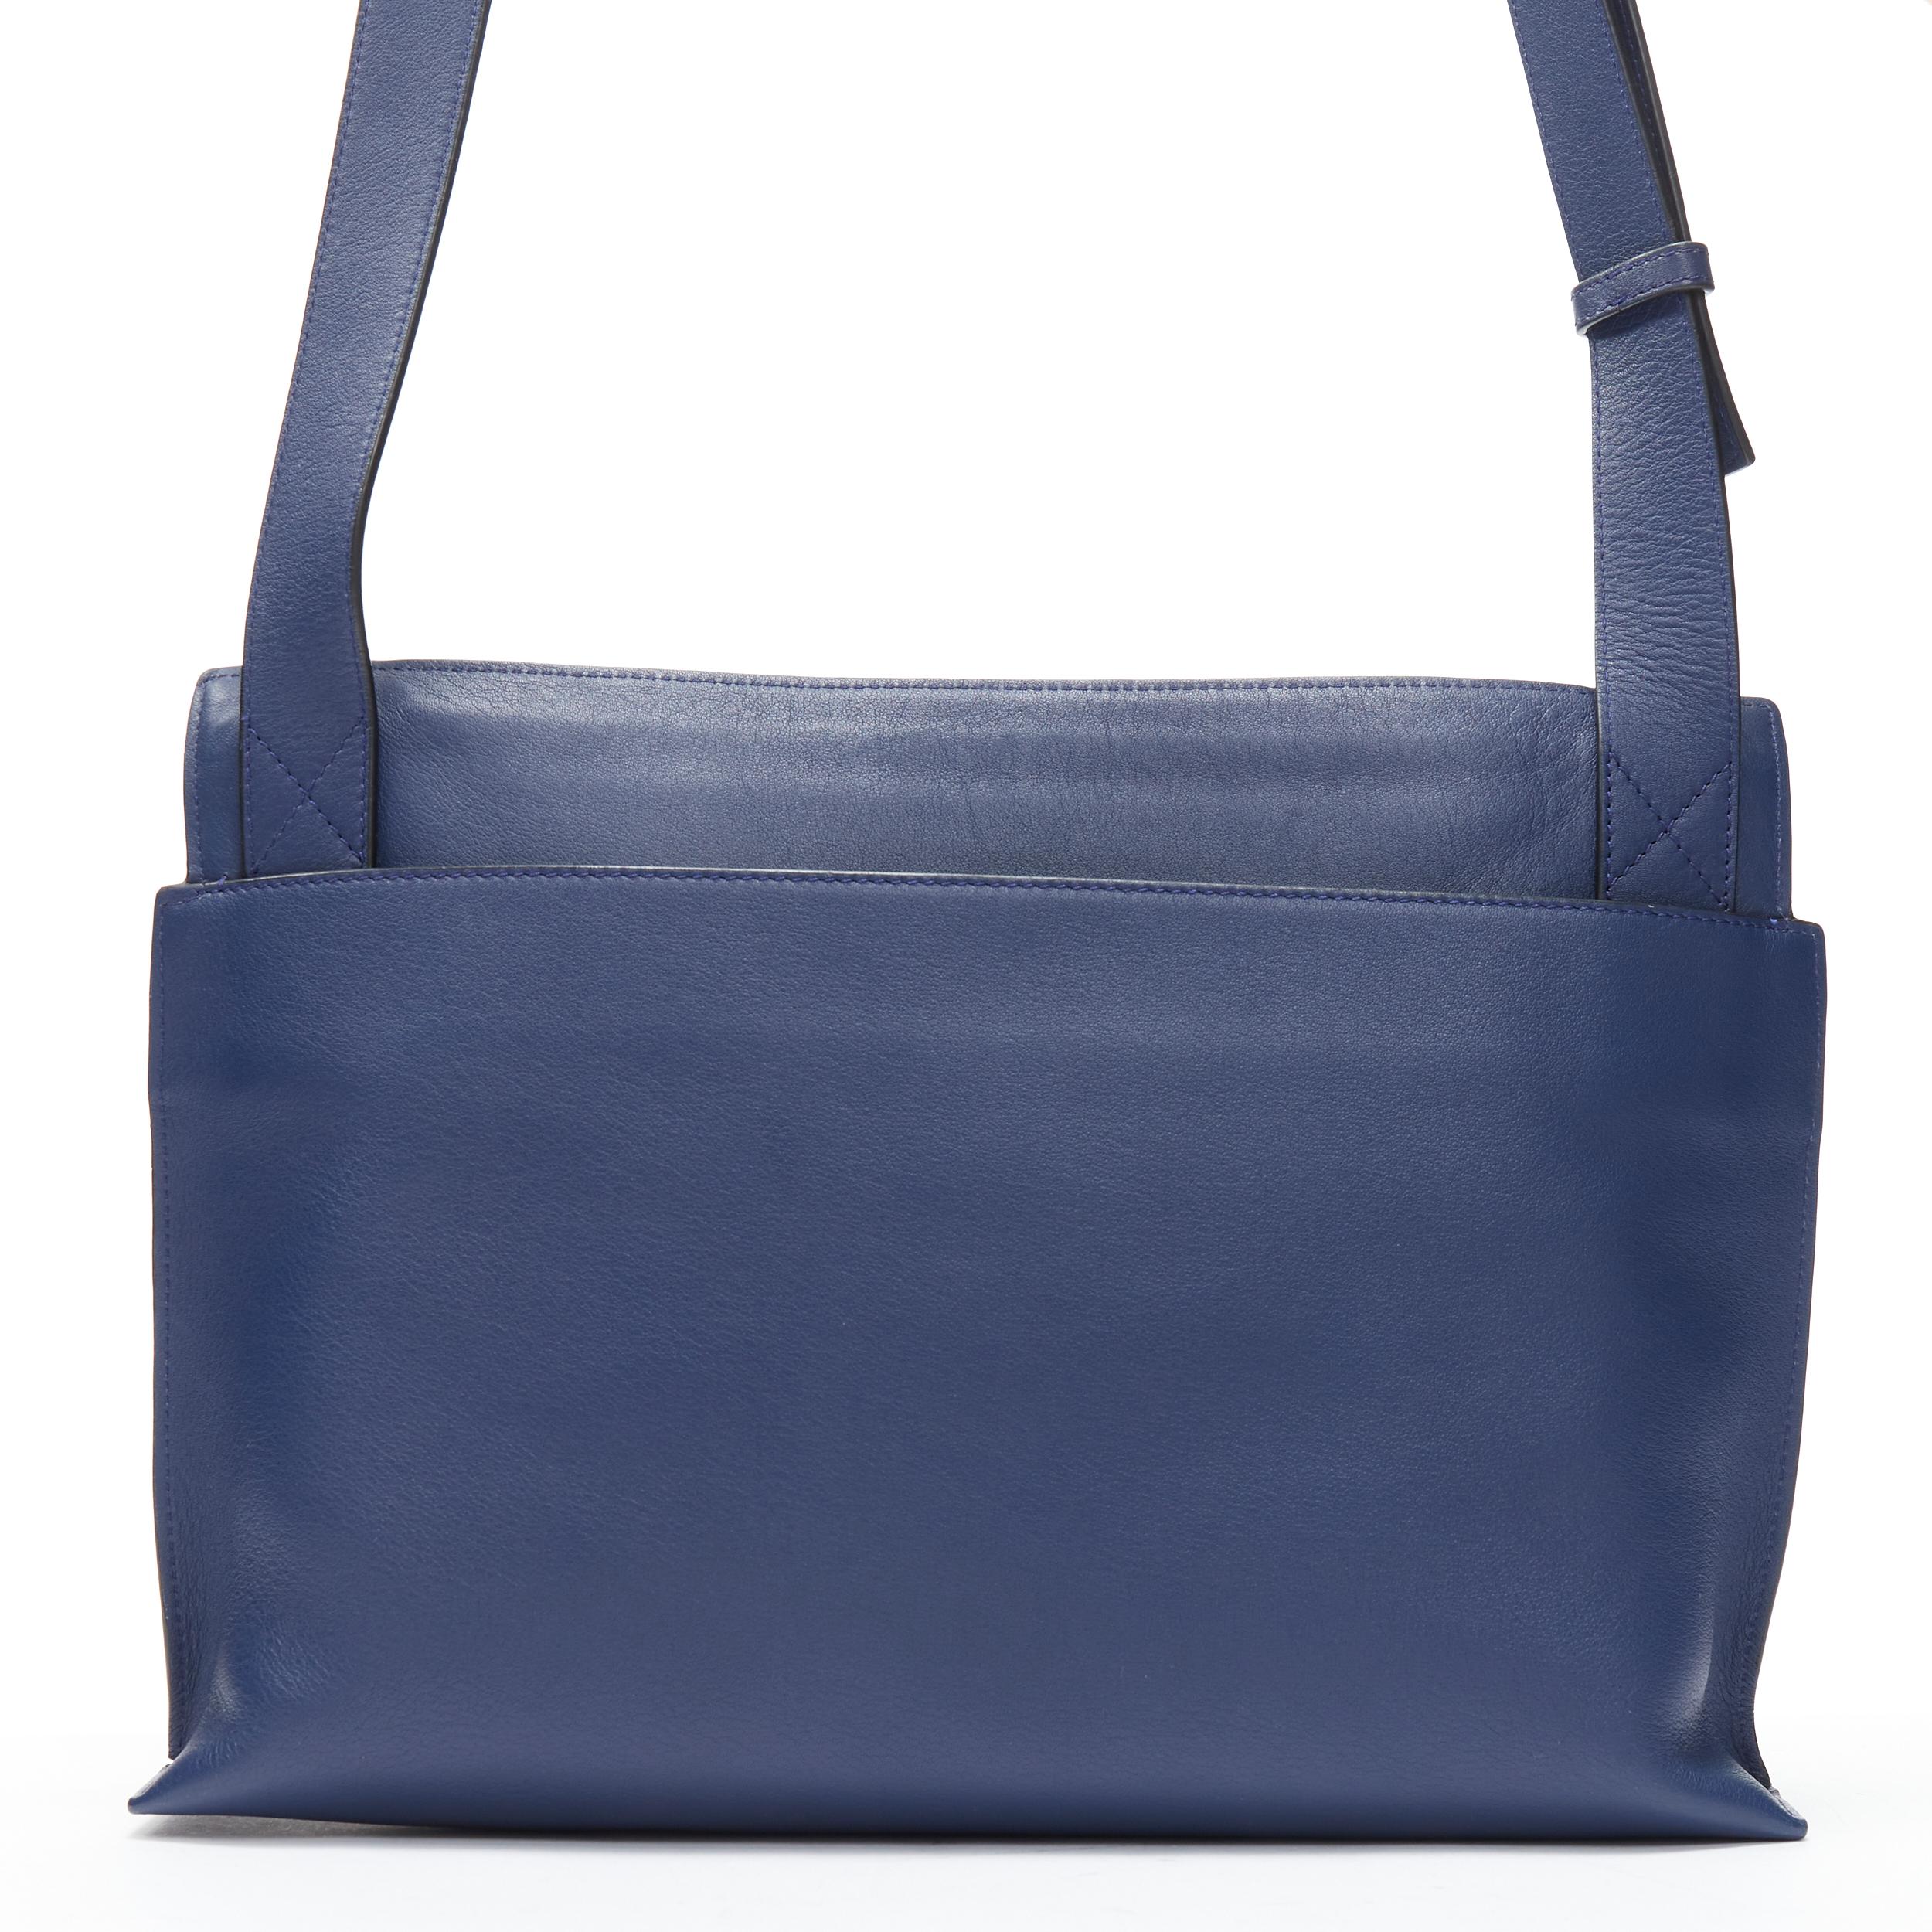 LOEWE 2017 T Messenger cuir bleu marine logo embossé zip crossbody messenger bag Pour femmes en vente